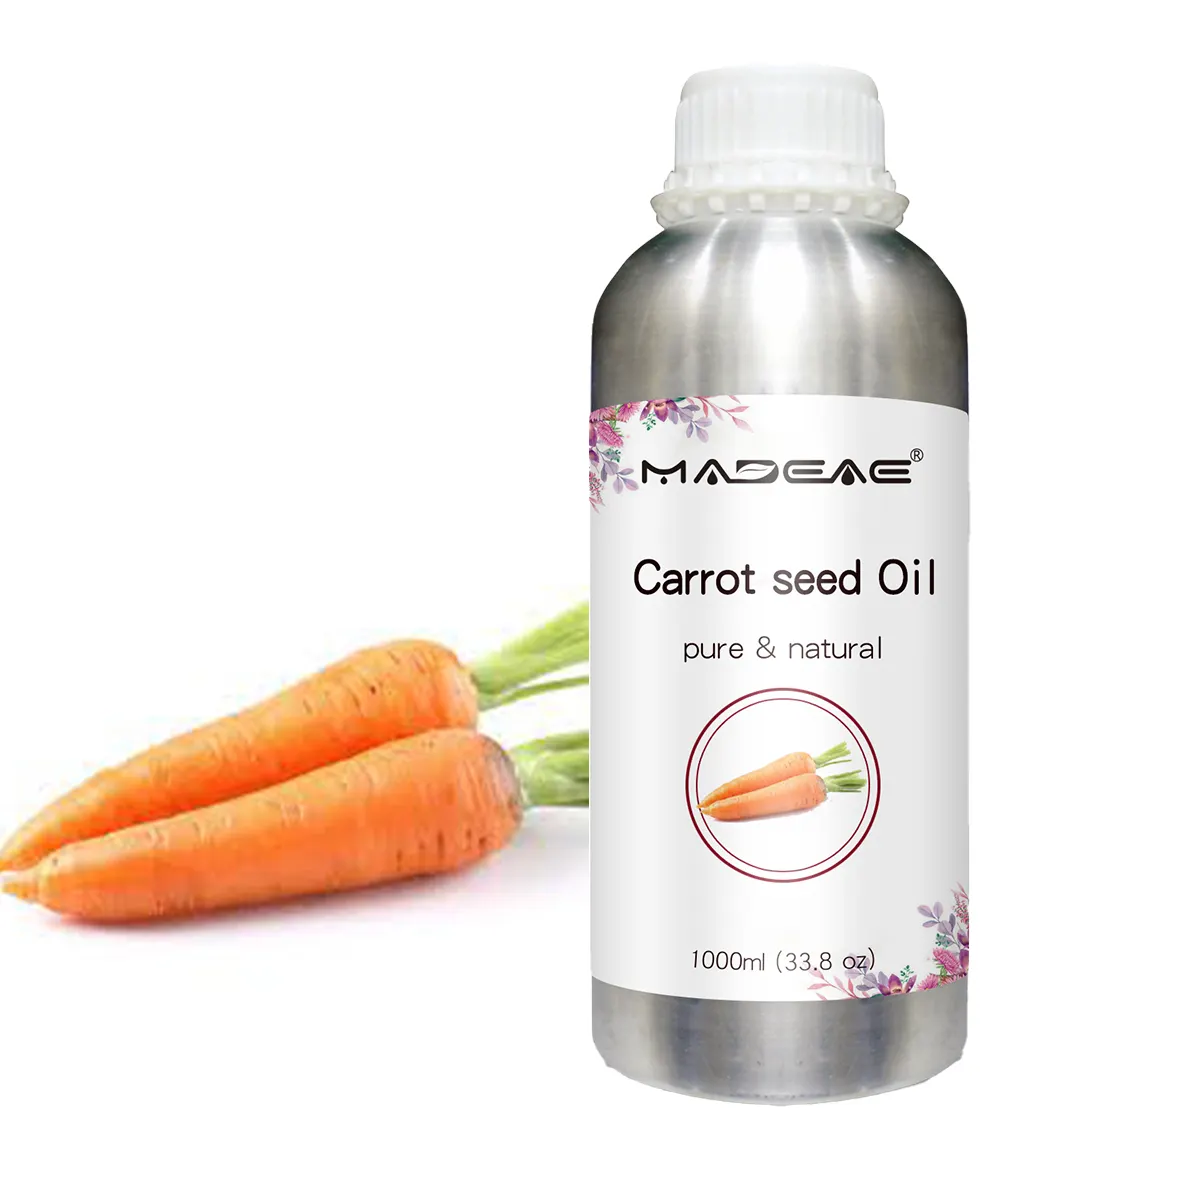 Превосходное производство OEM/ODM, эфирное масло для семян моркови холодного отжима, производитель натуральных 100%, чистое и натуральное Морковное Масло, уход за кожей